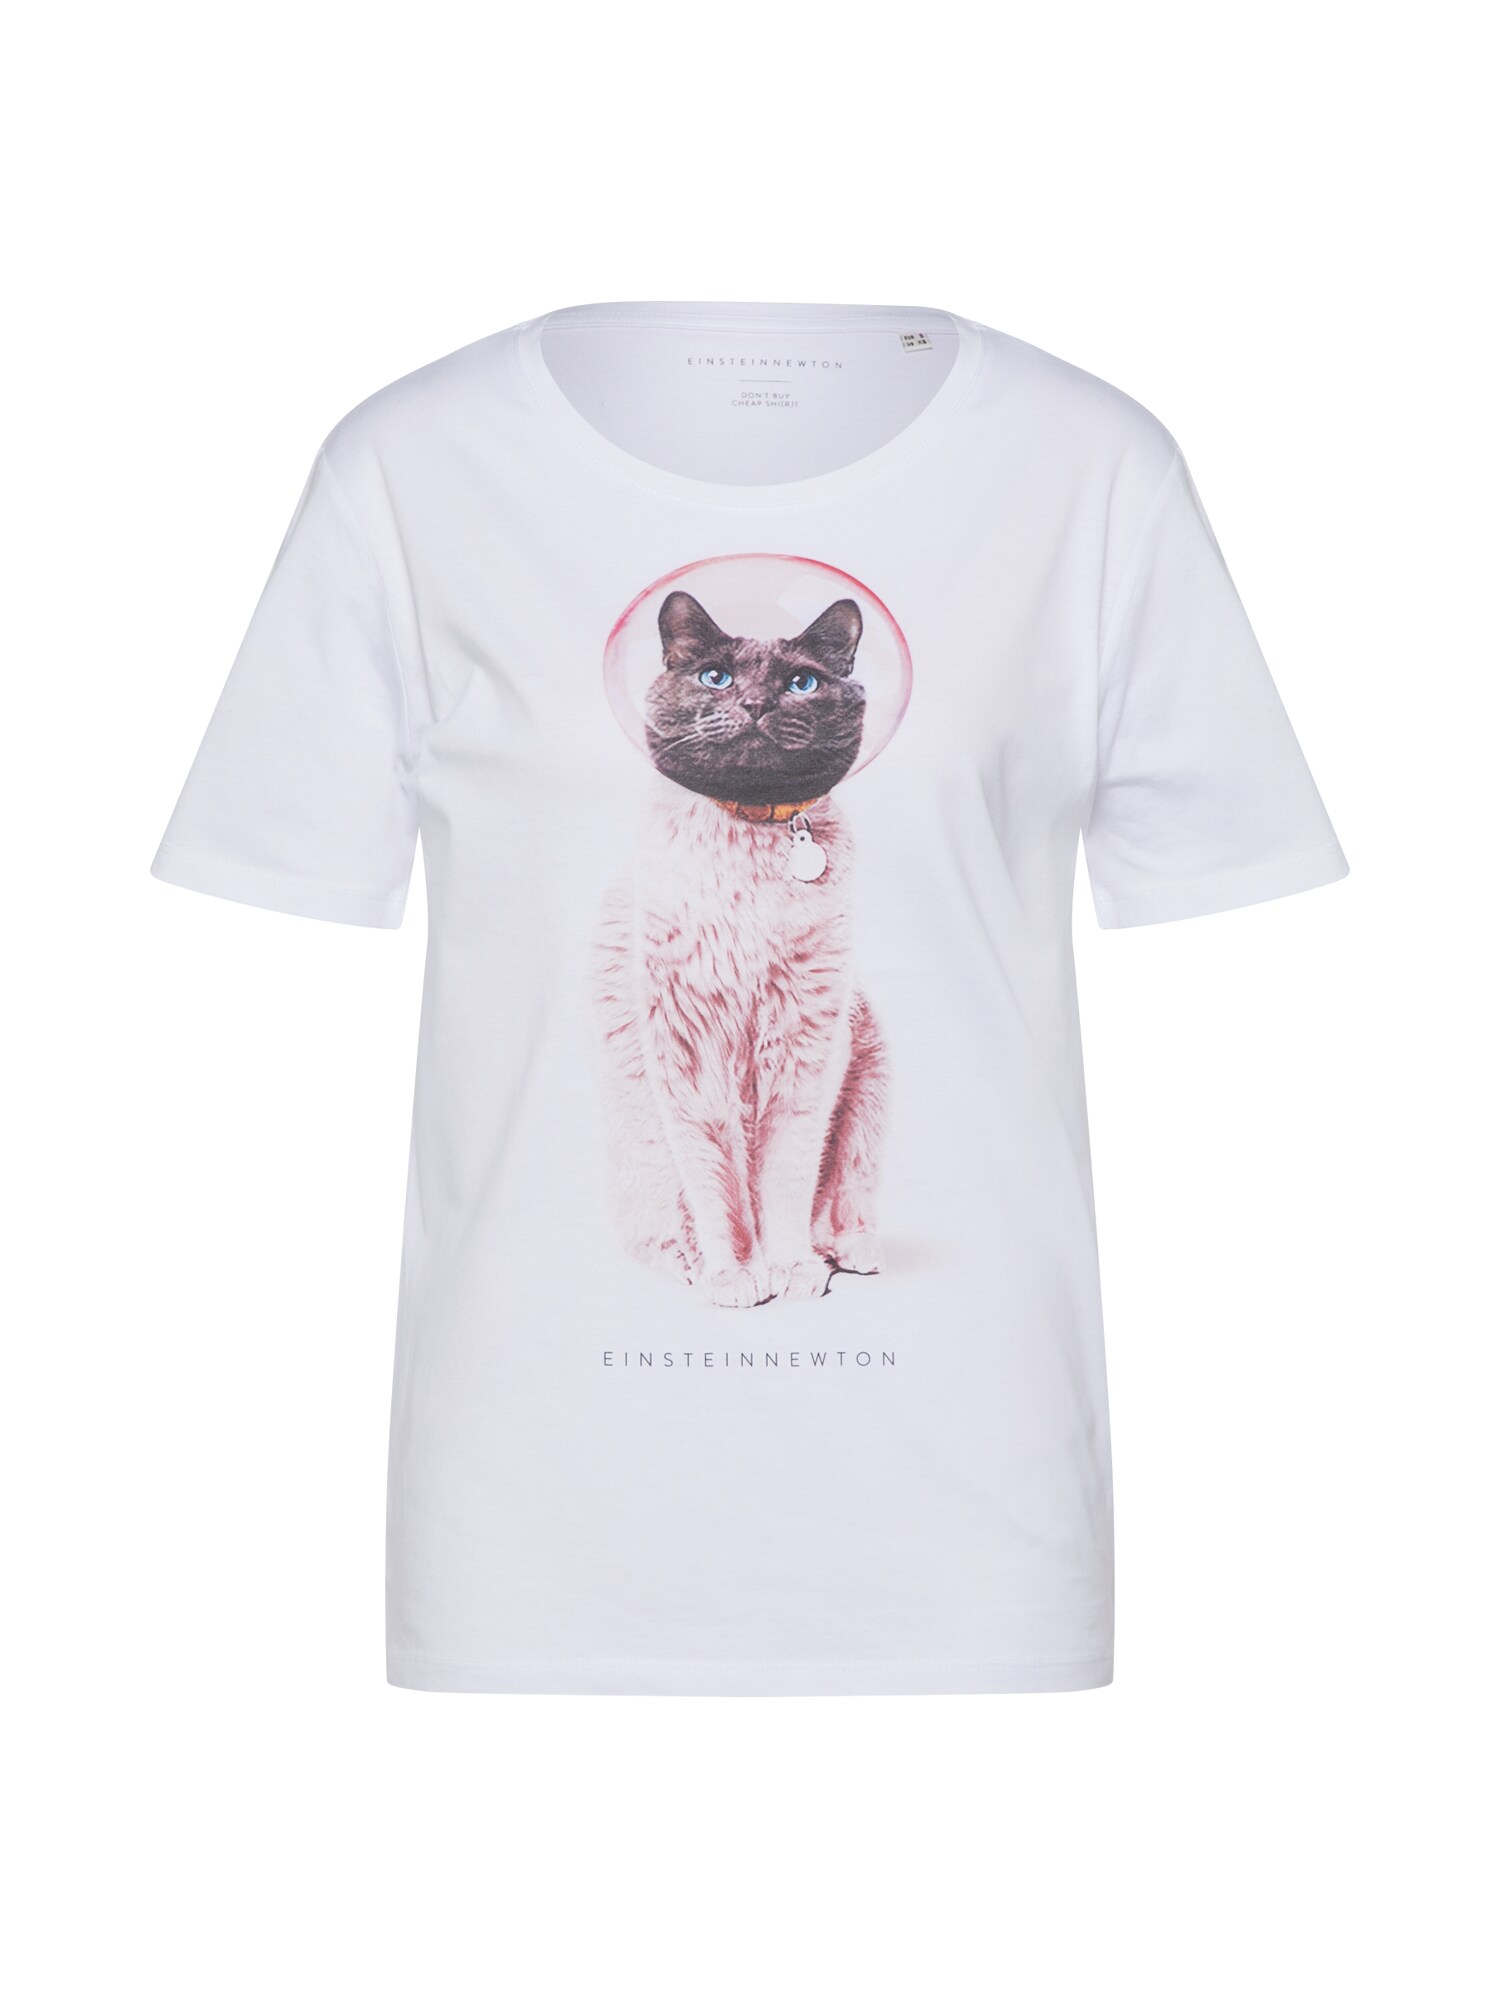 EINSTEIN & NEWTON Marškinėliai 'Astro Cat'  pilka / ryškiai rožinė spalva / balta